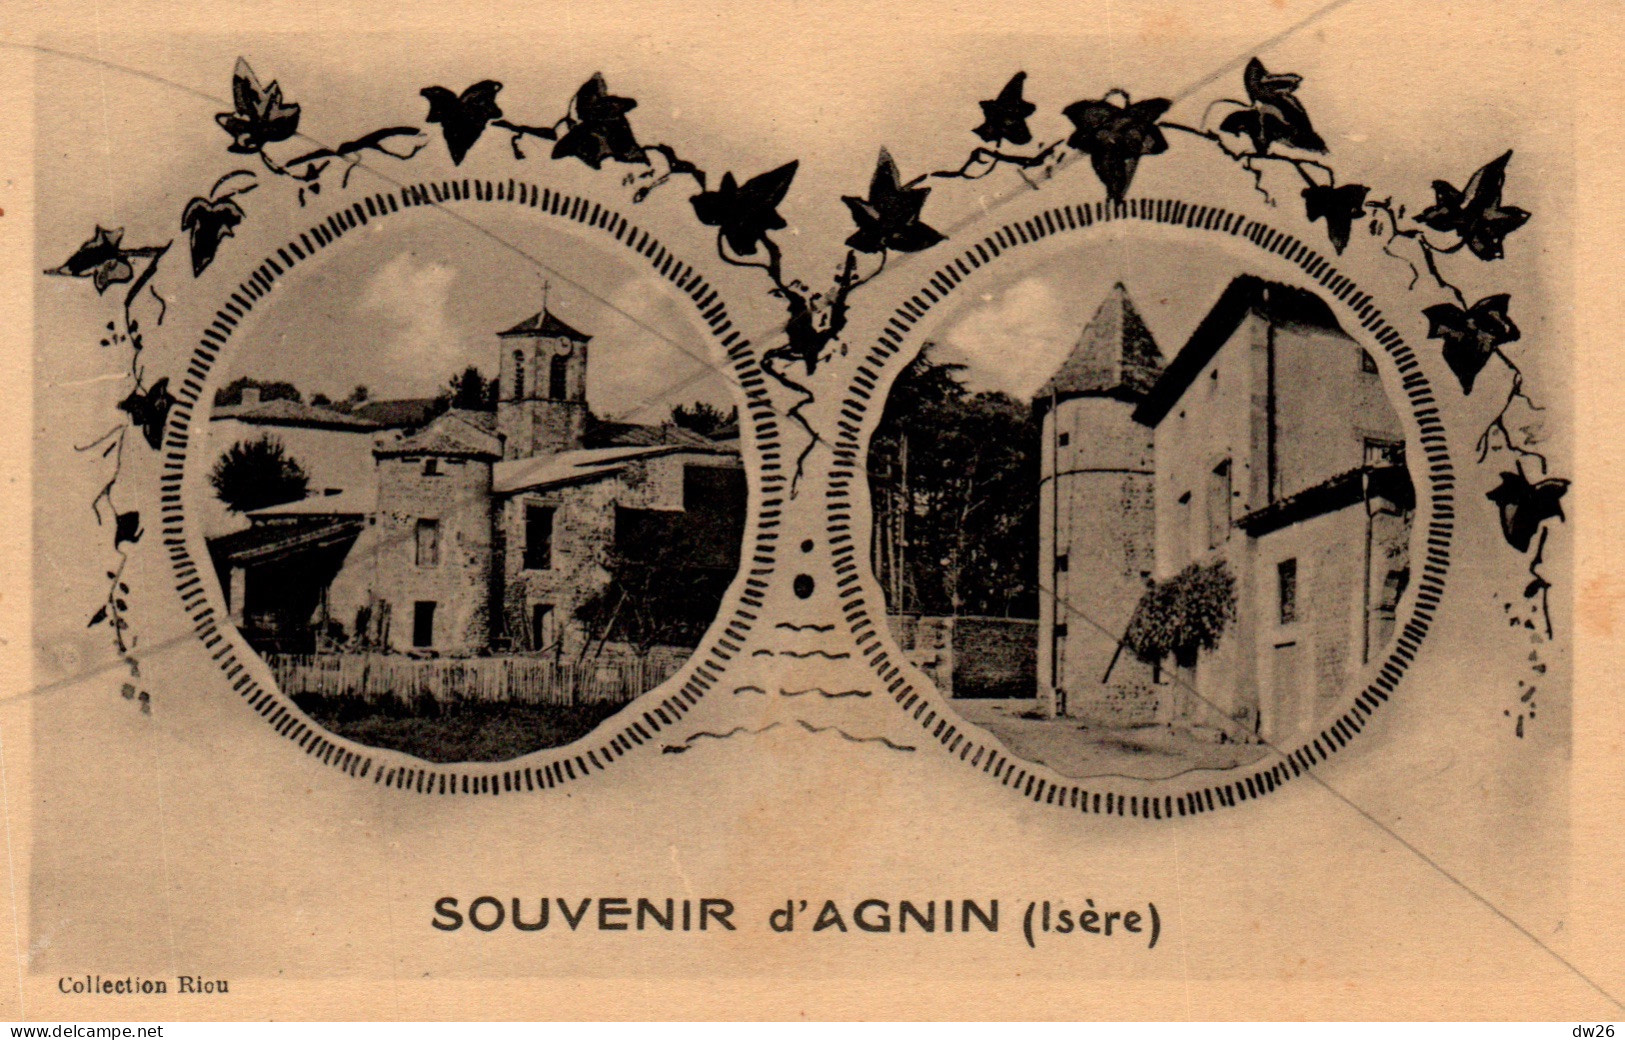 Souvenir D'Agnin (Isère) Multivues (Eglise, Chateau) Collection Riou - Carte J. Cellard Non Circulée - Gruss Aus.../ Gruesse Aus...